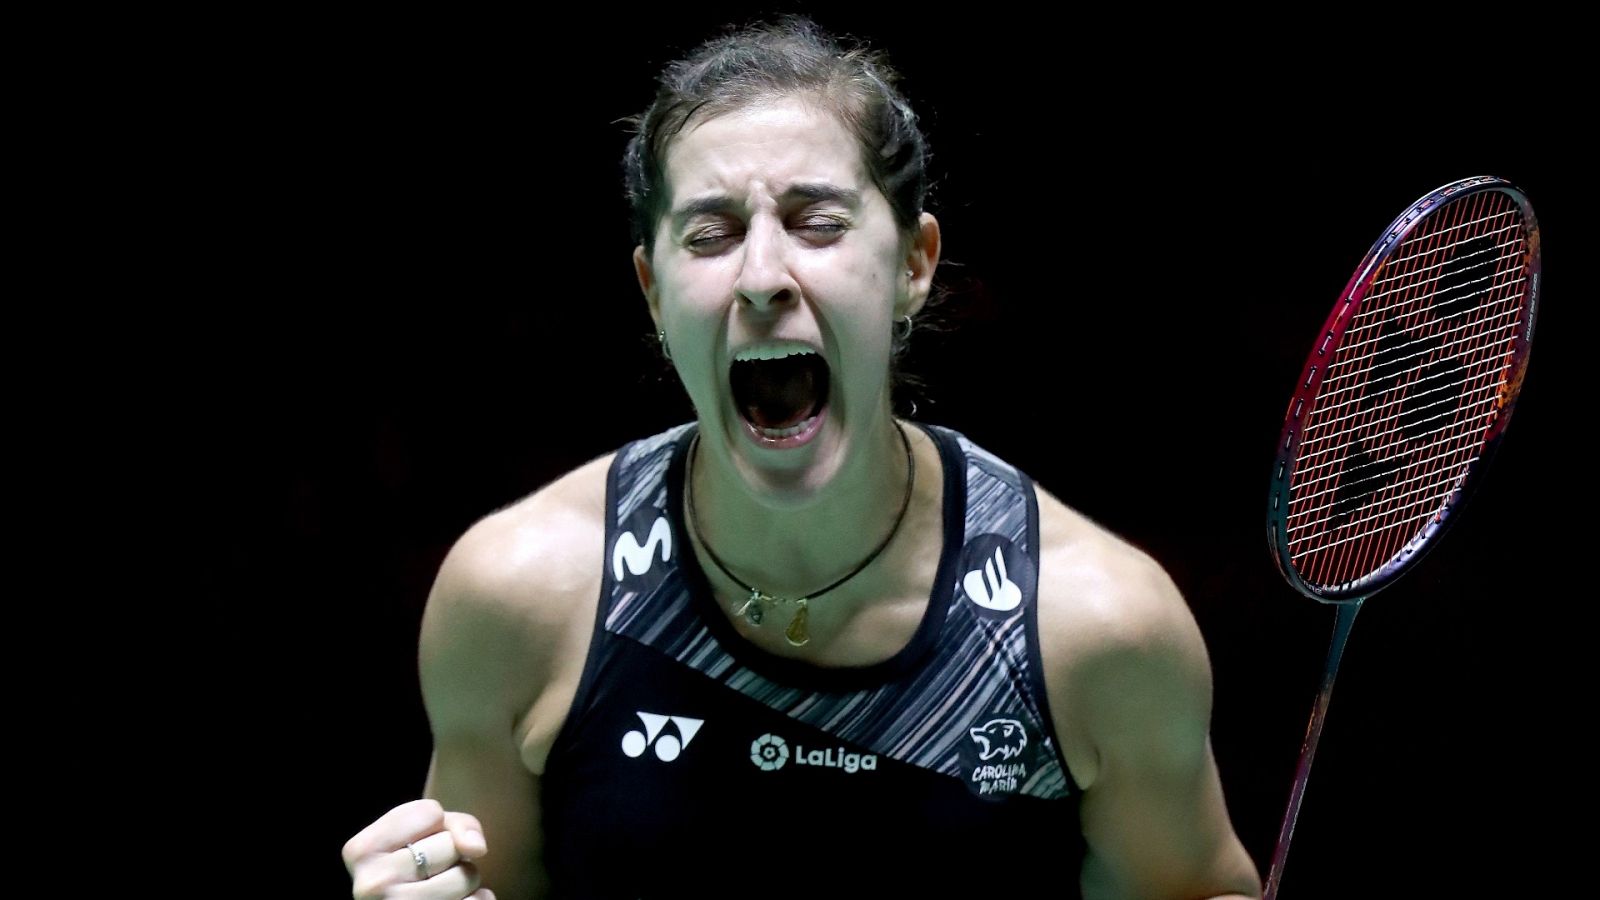 Carolina Marín celebra su victoria en semifinales